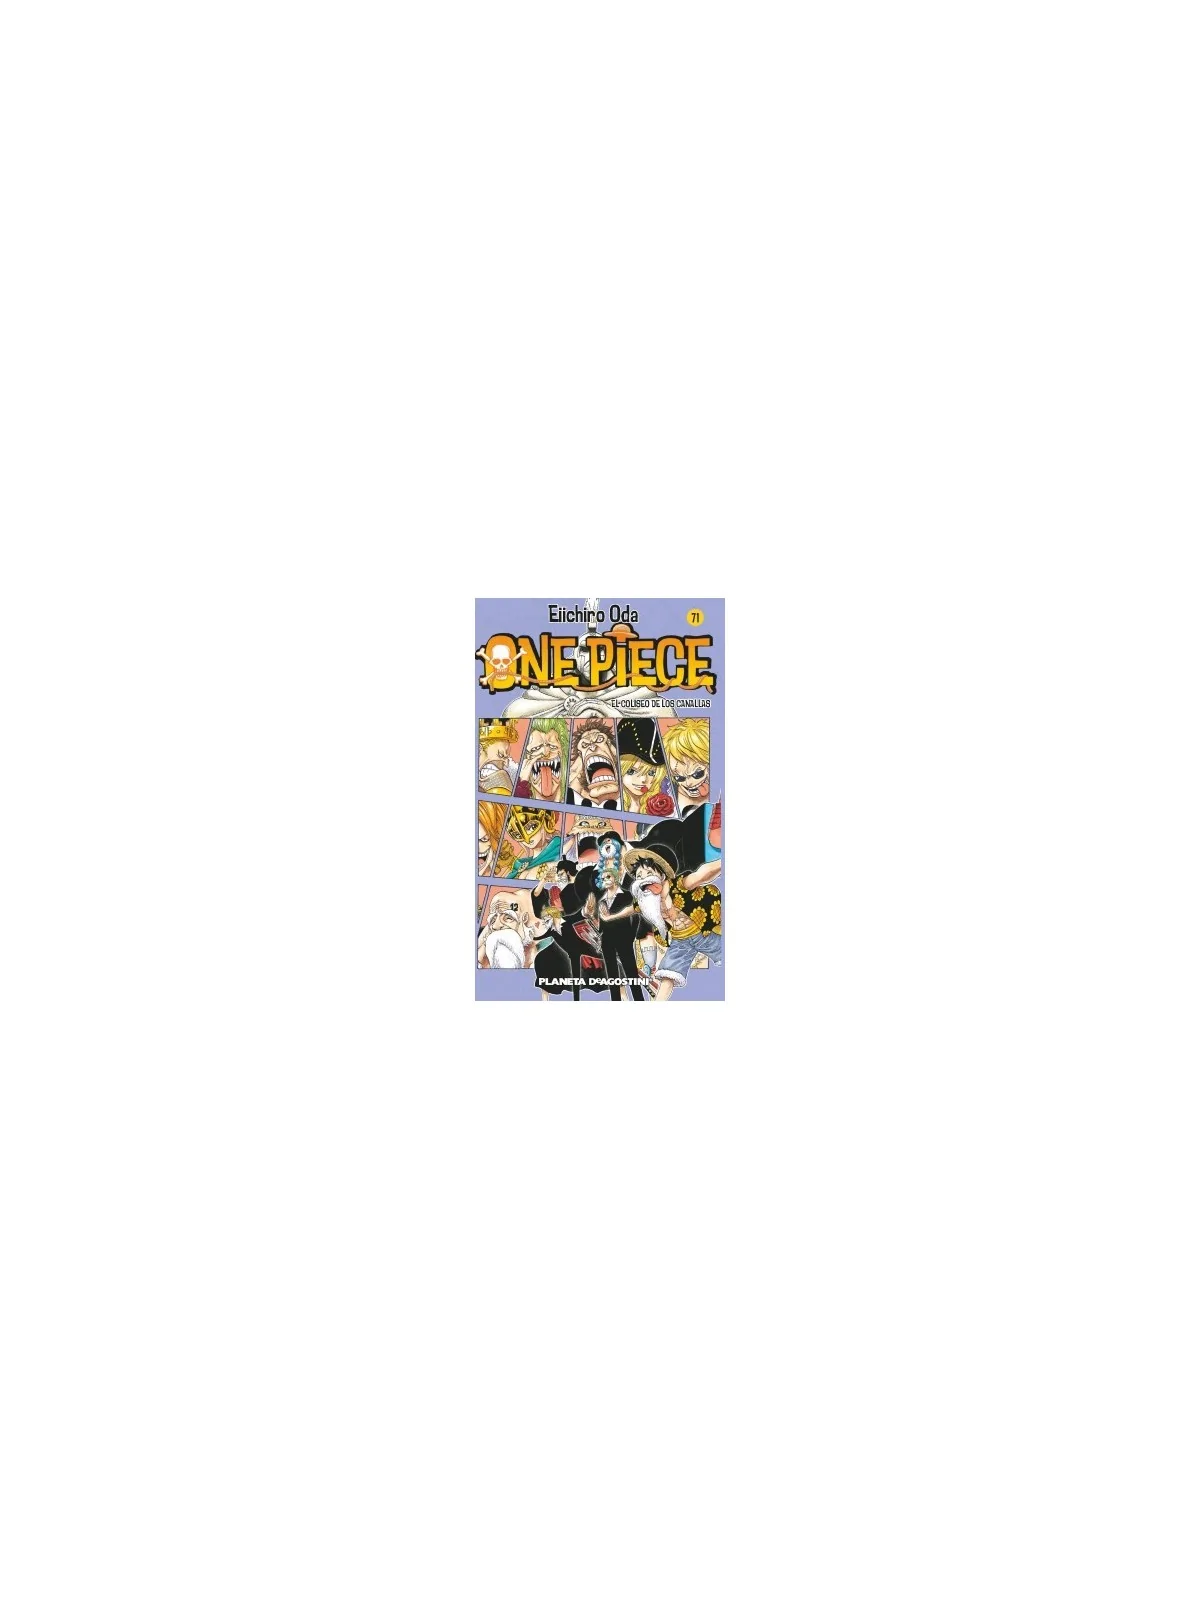 Comprar One Piece 071 barato al mejor precio 7,55 € de Planeta Comic